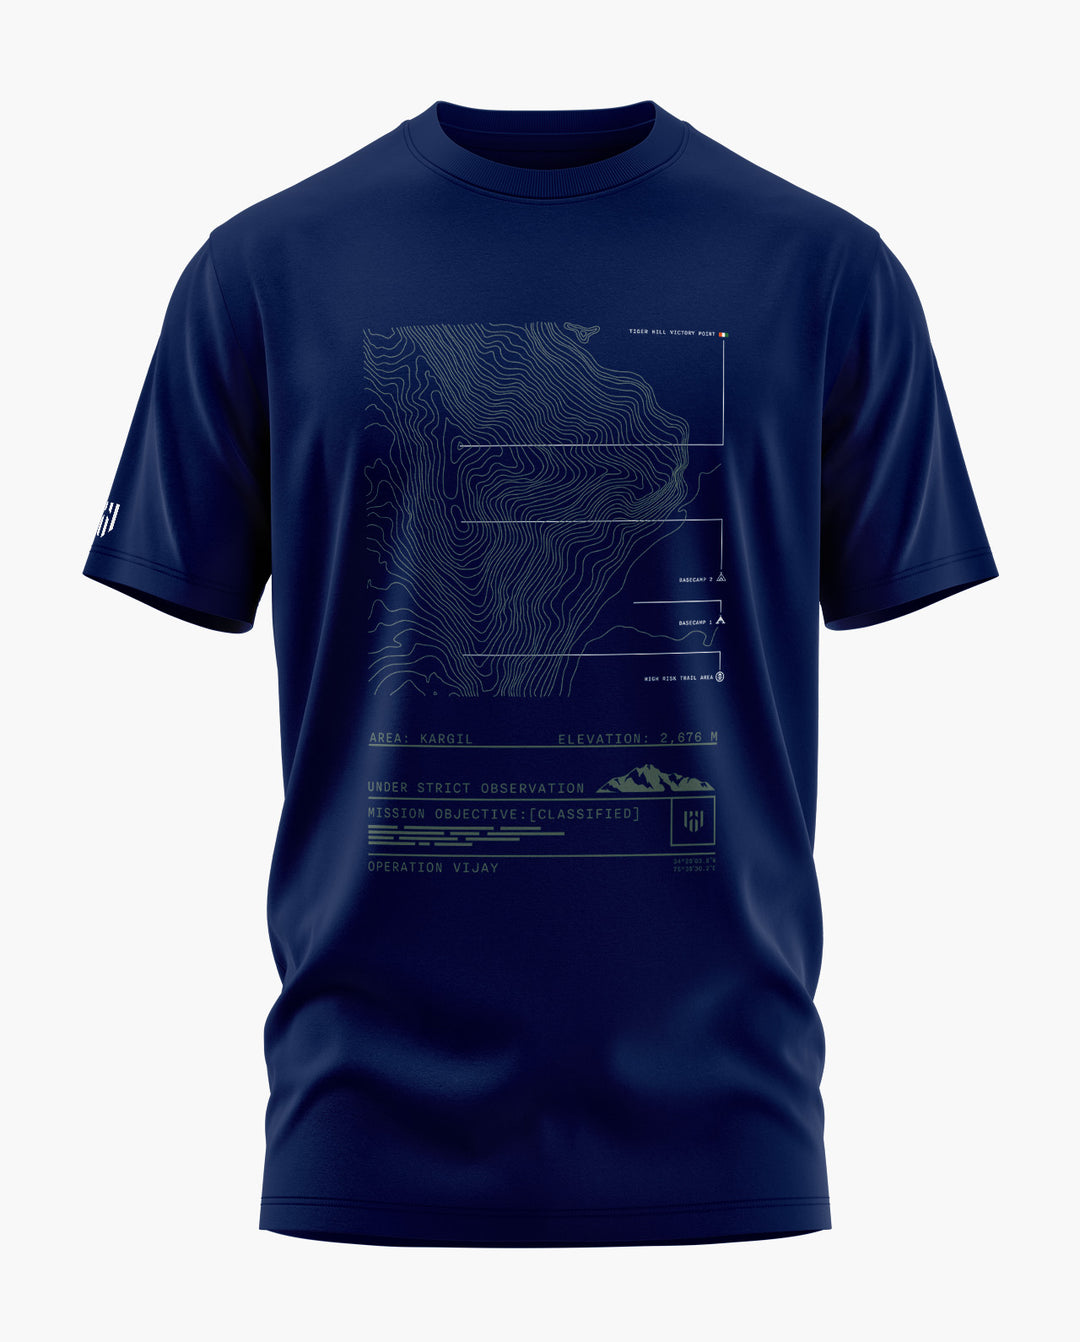 BATTLE TRAIL-KARGIL T-Shirt